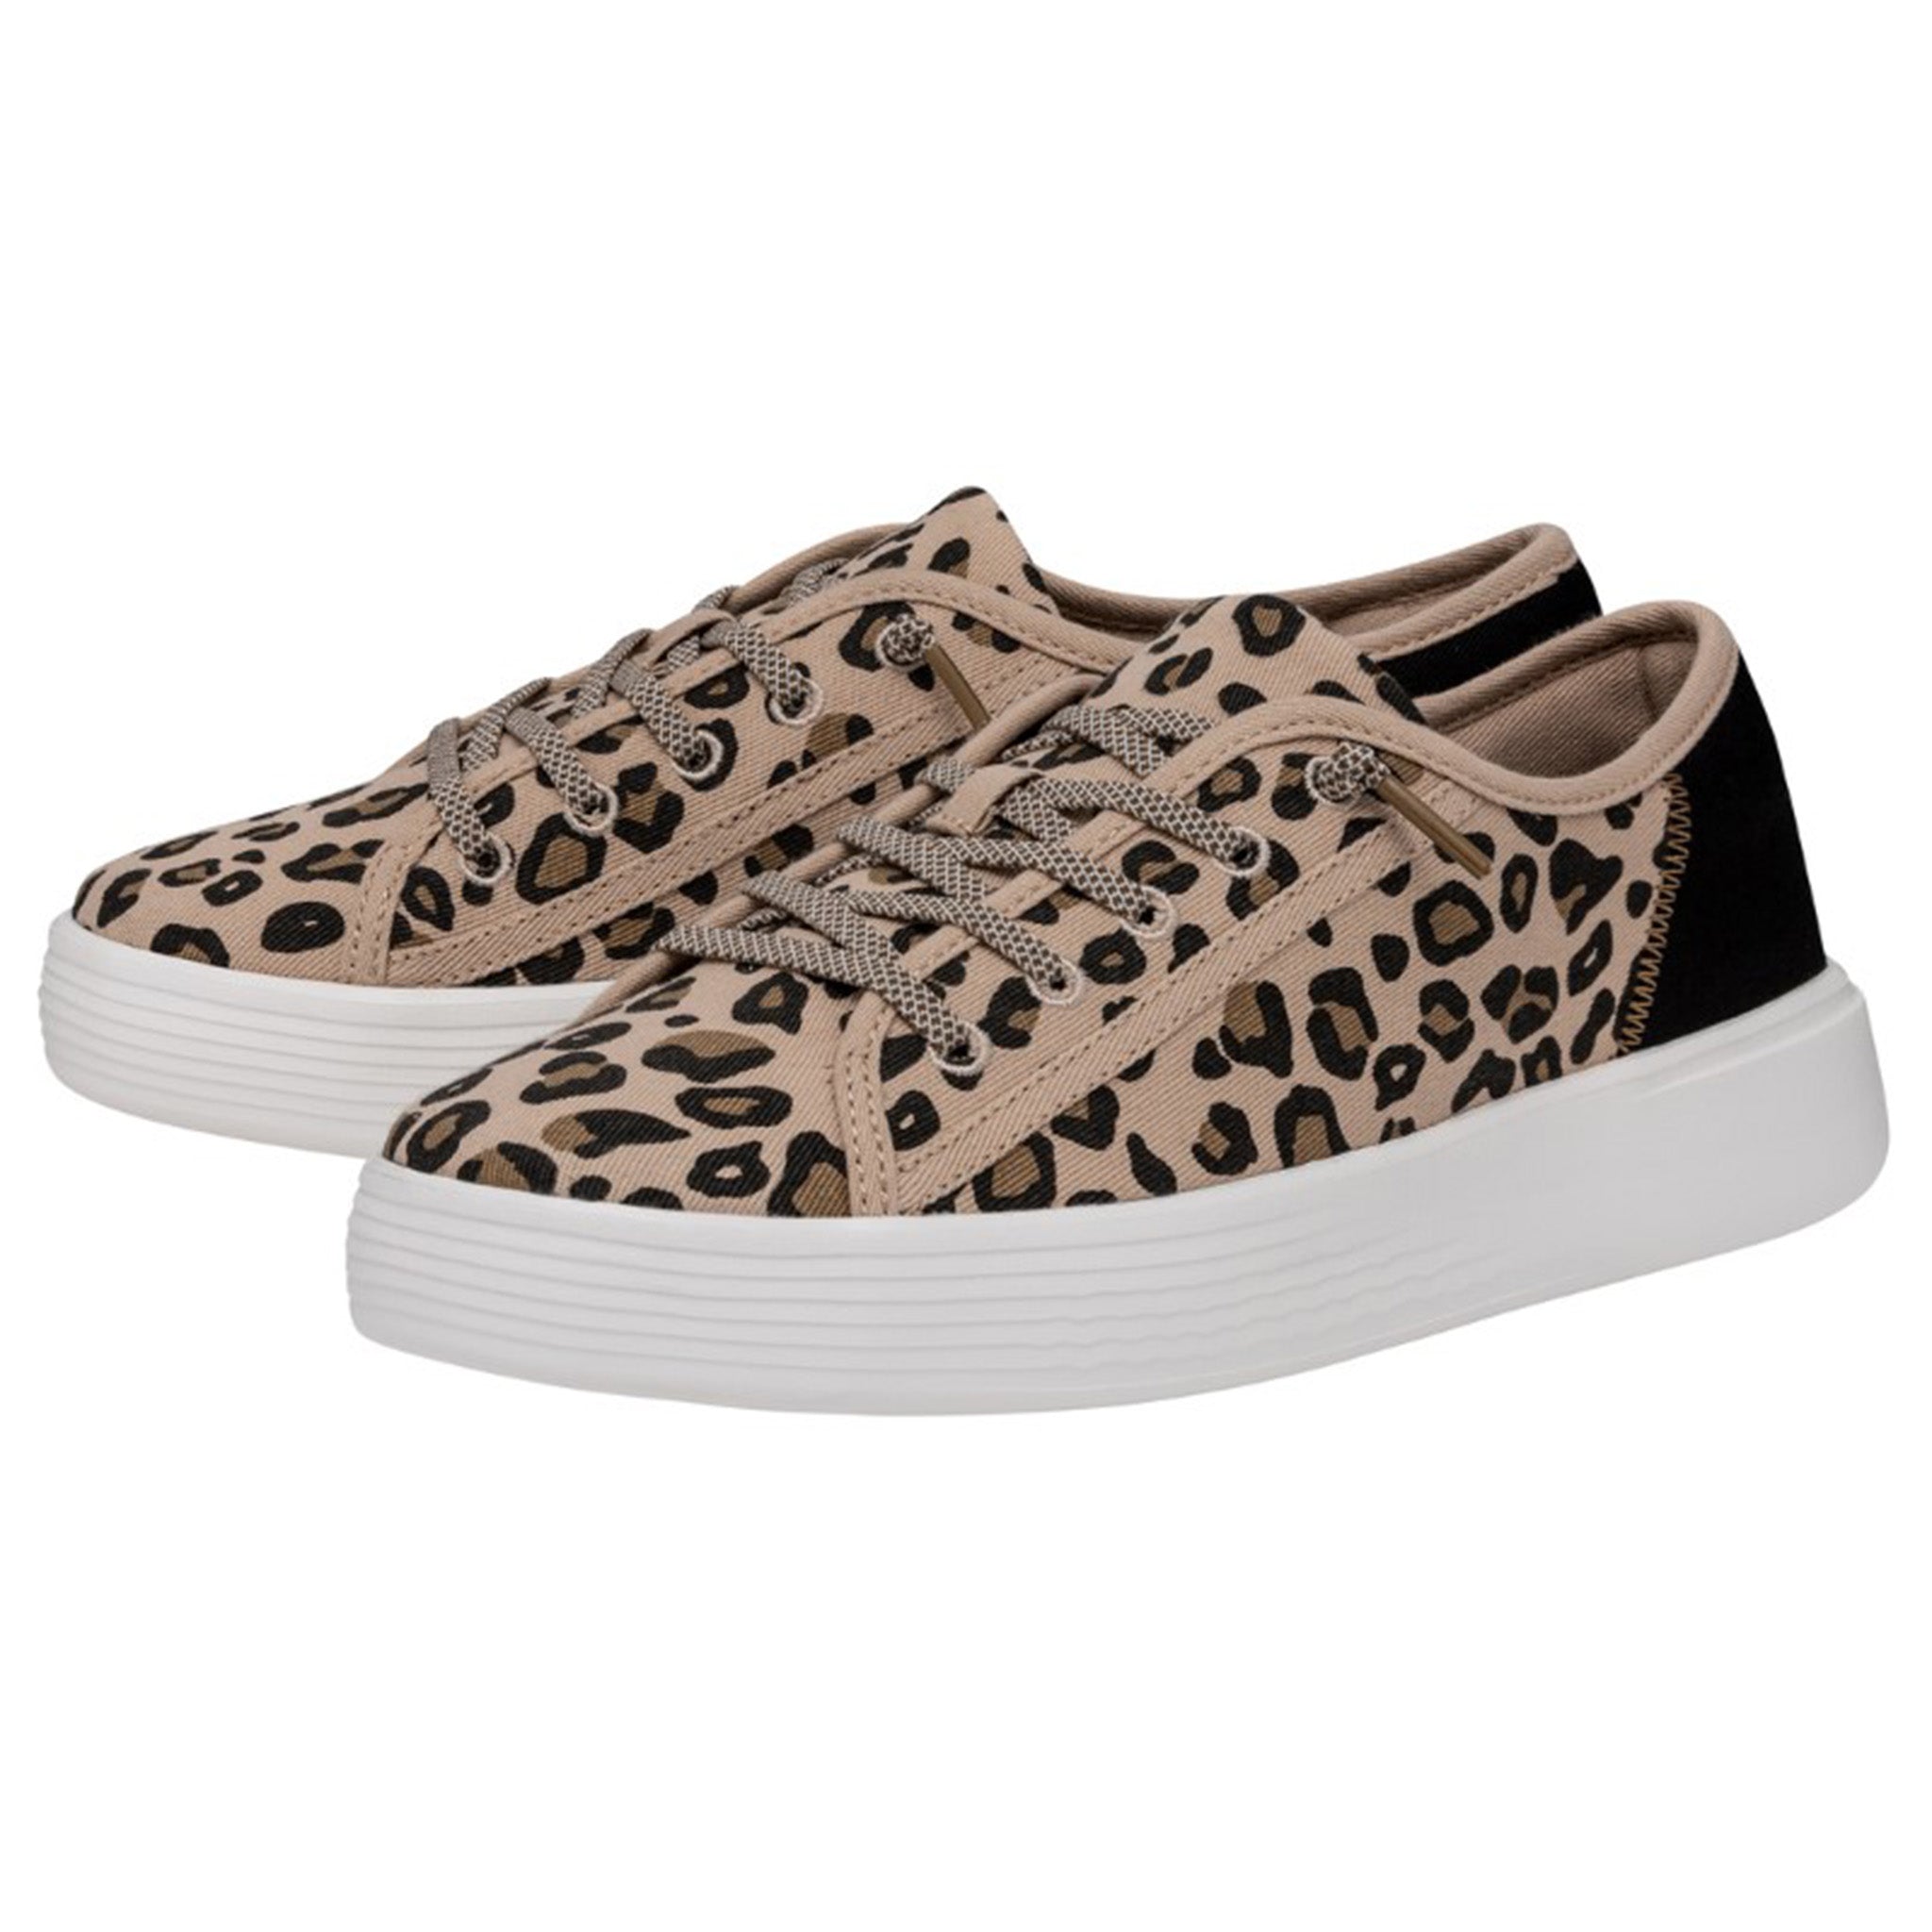 Hey dude custom Louis Vuitton womens leopard size 10 U.S. boat shoe loafer